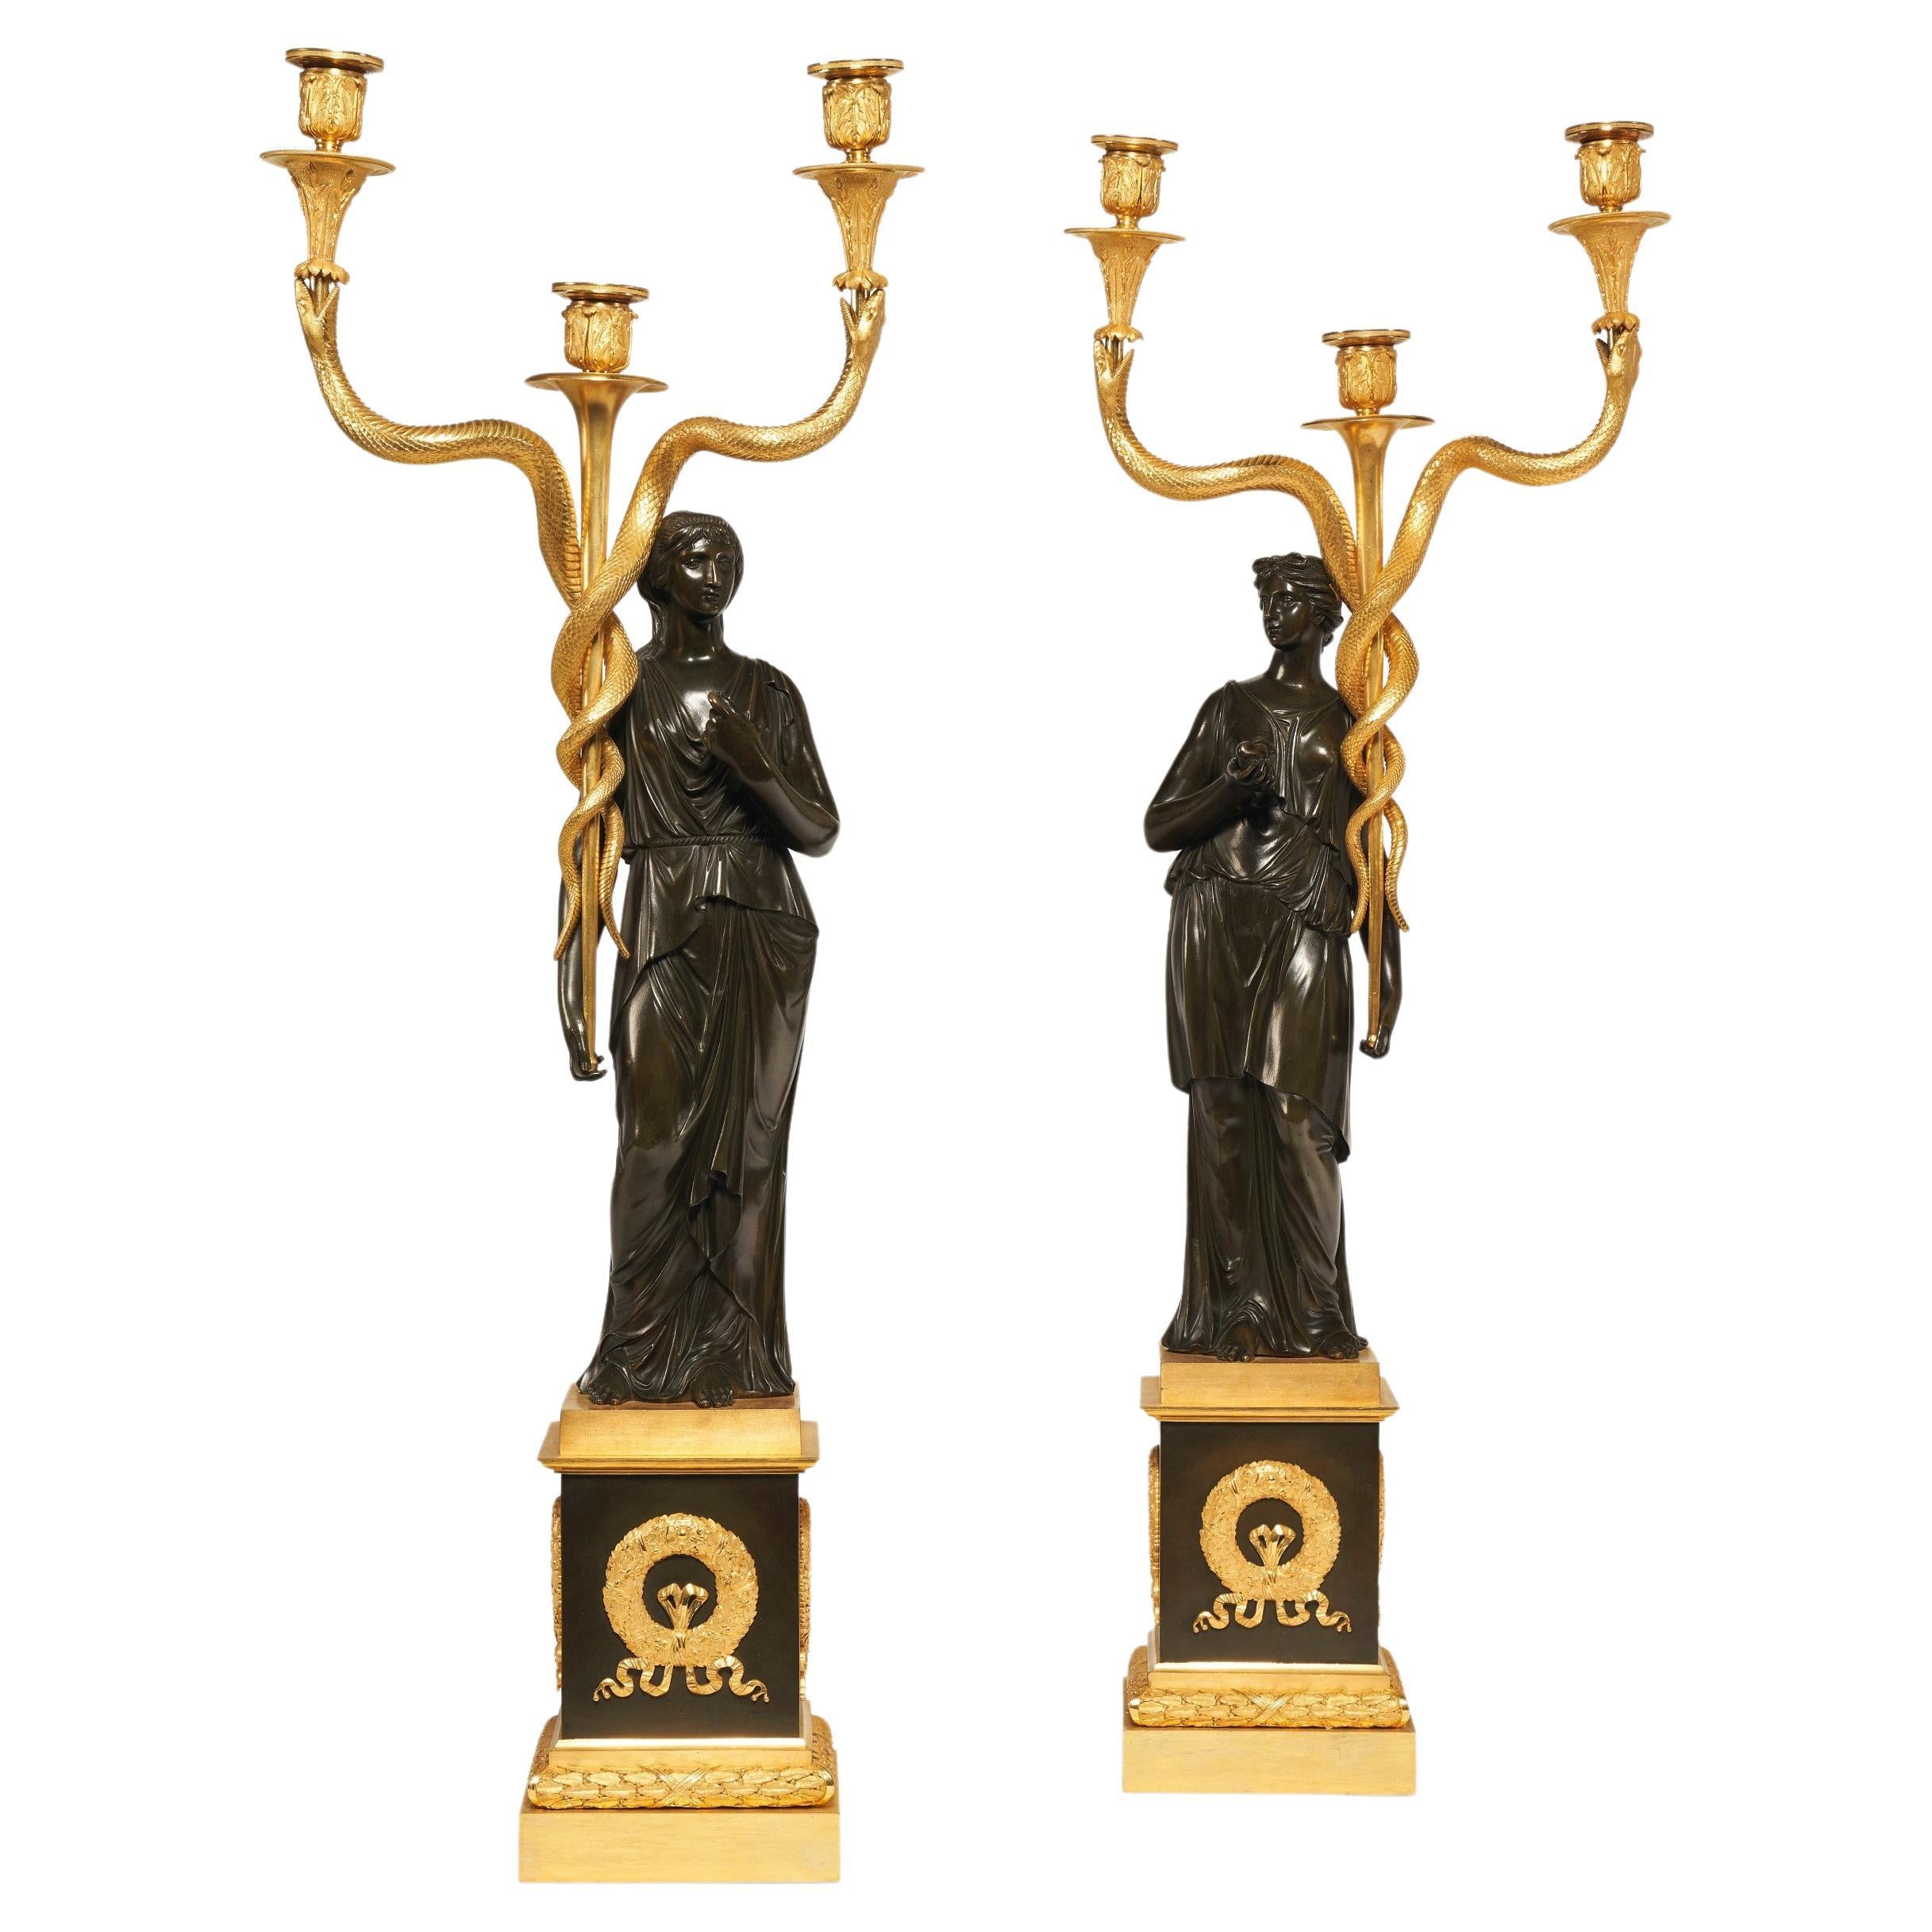 Figurale Kandelaber im französischen Empire-Stil des 19. Jahrhunderts aus Goldbronze und patinierter Bronze